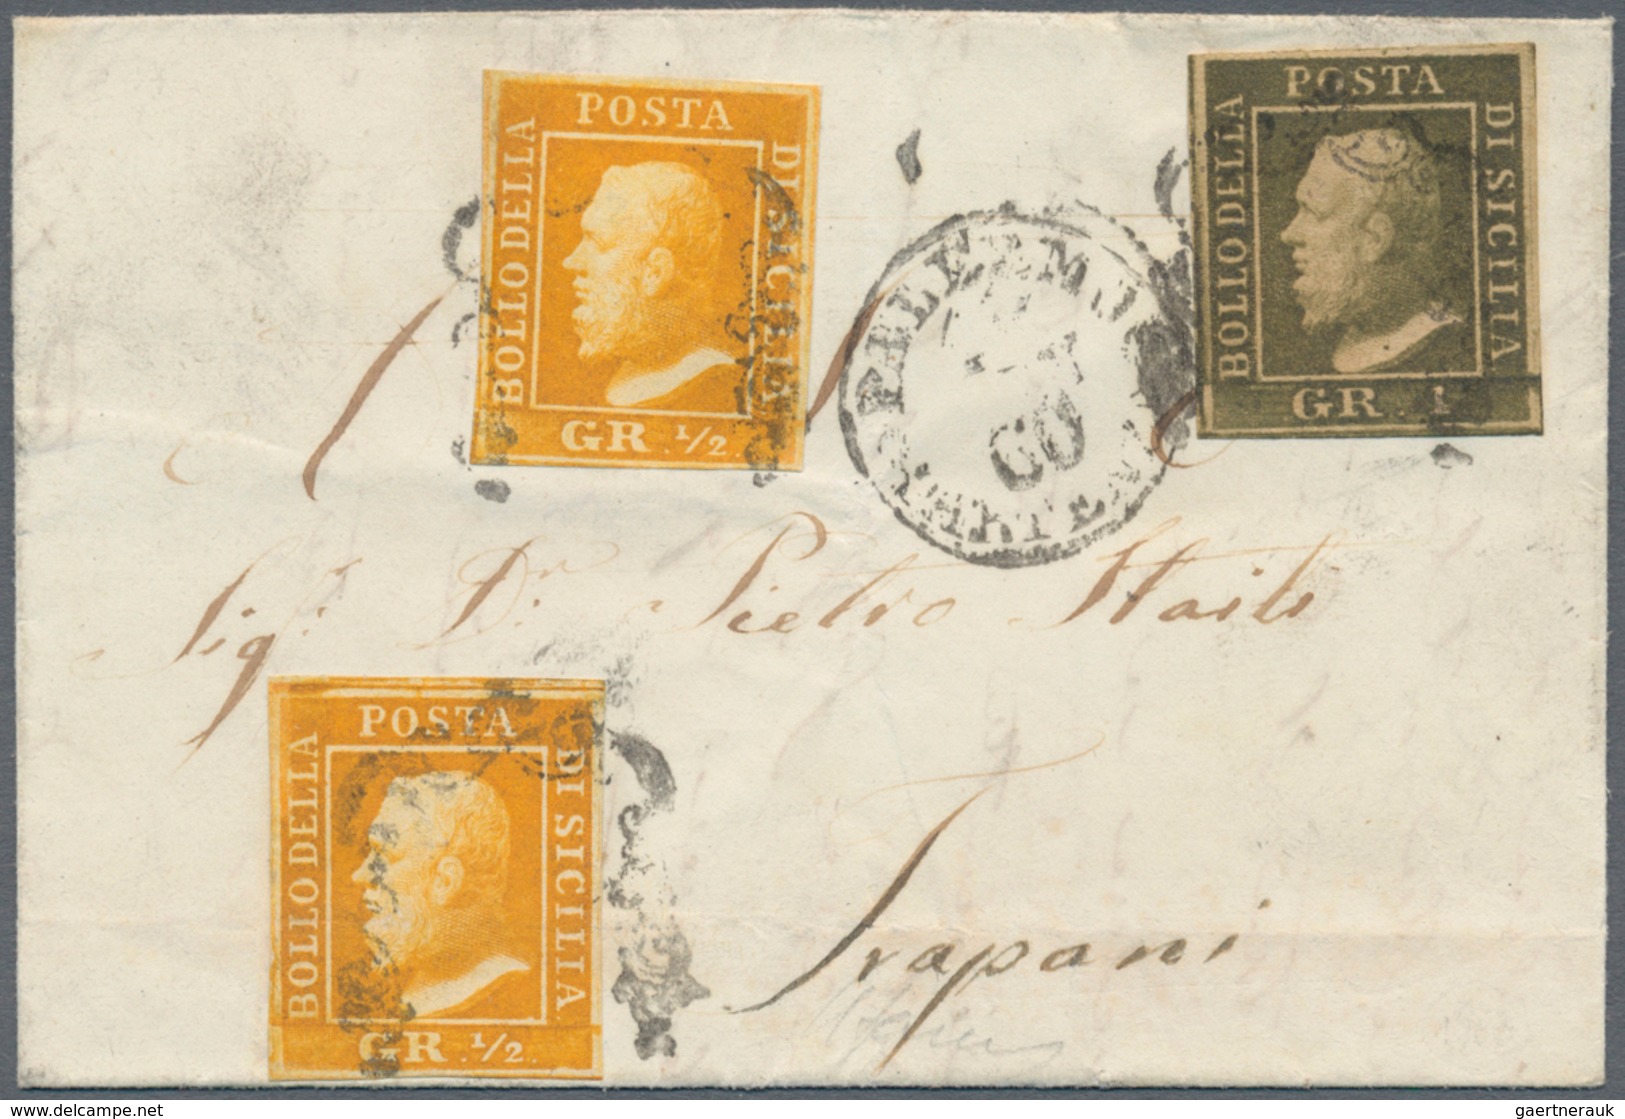 00865 Italien - Altitalienische Staaten: Sizilien: 1859, 1/2 Grano, Second Plate, Orange, Palermo Paper, T - Sicilië